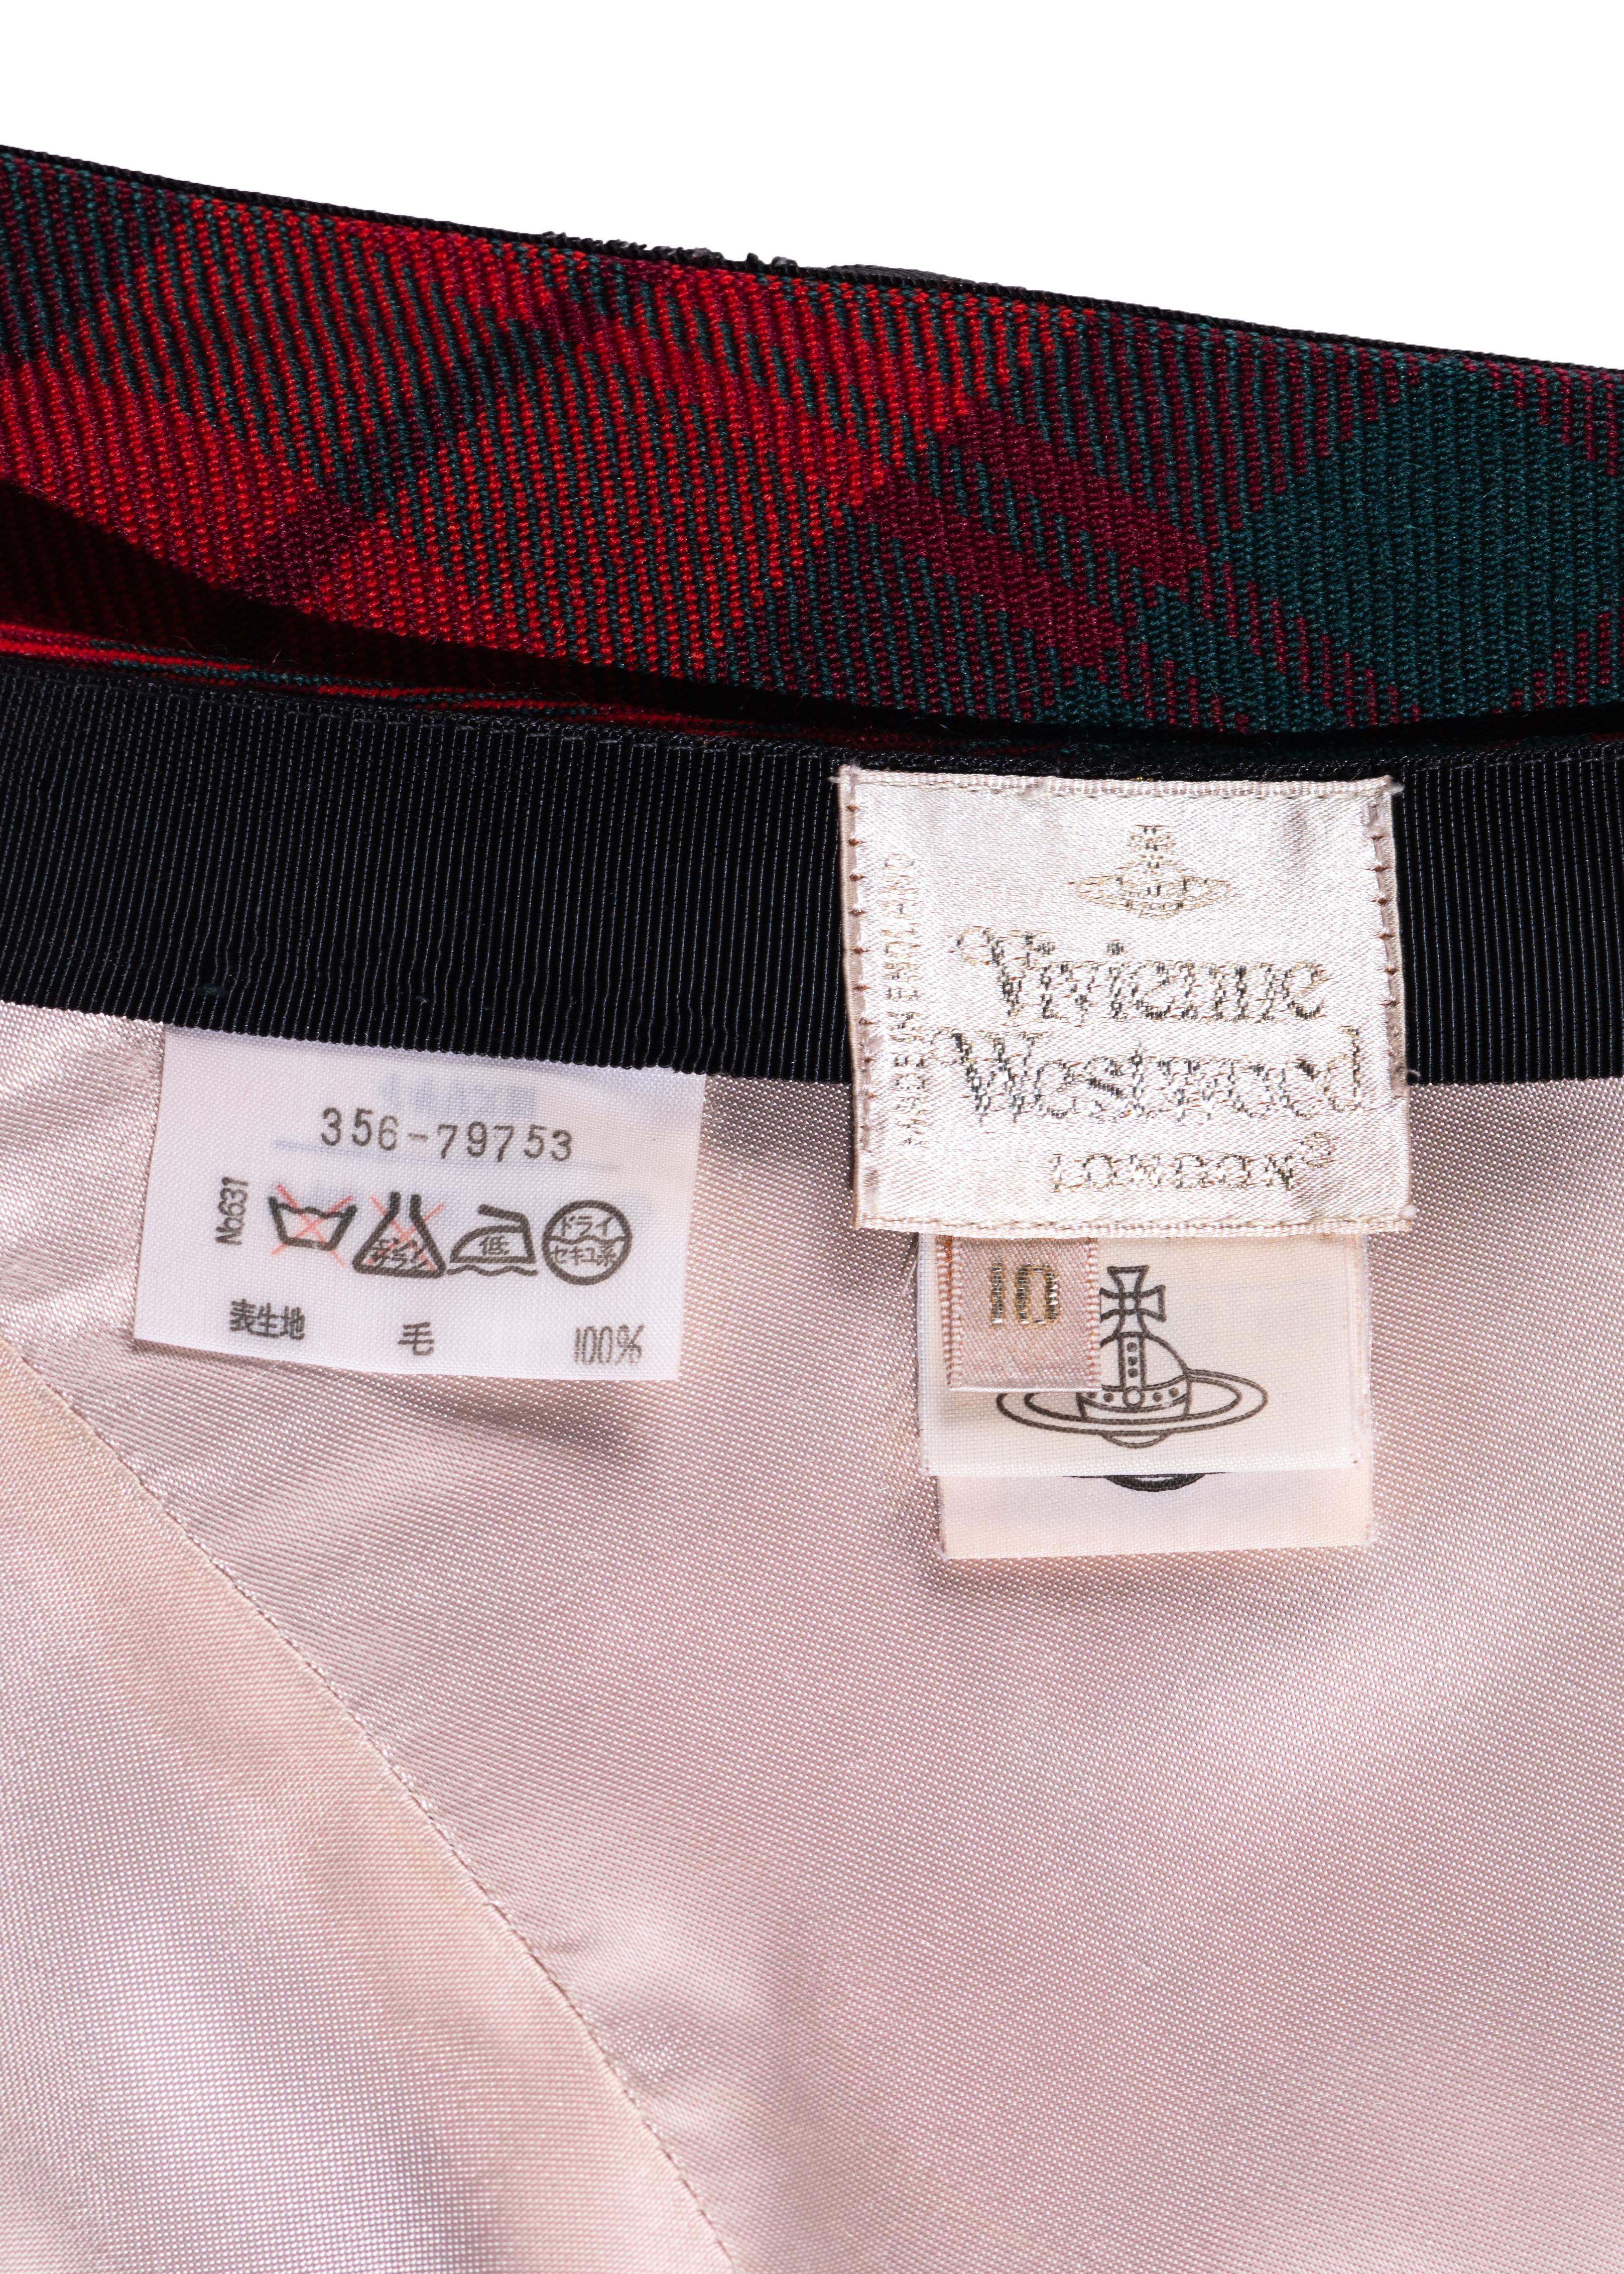 Vivienne Westwood red tartan wool and black velvet bias cut shorts, fw 1996 2